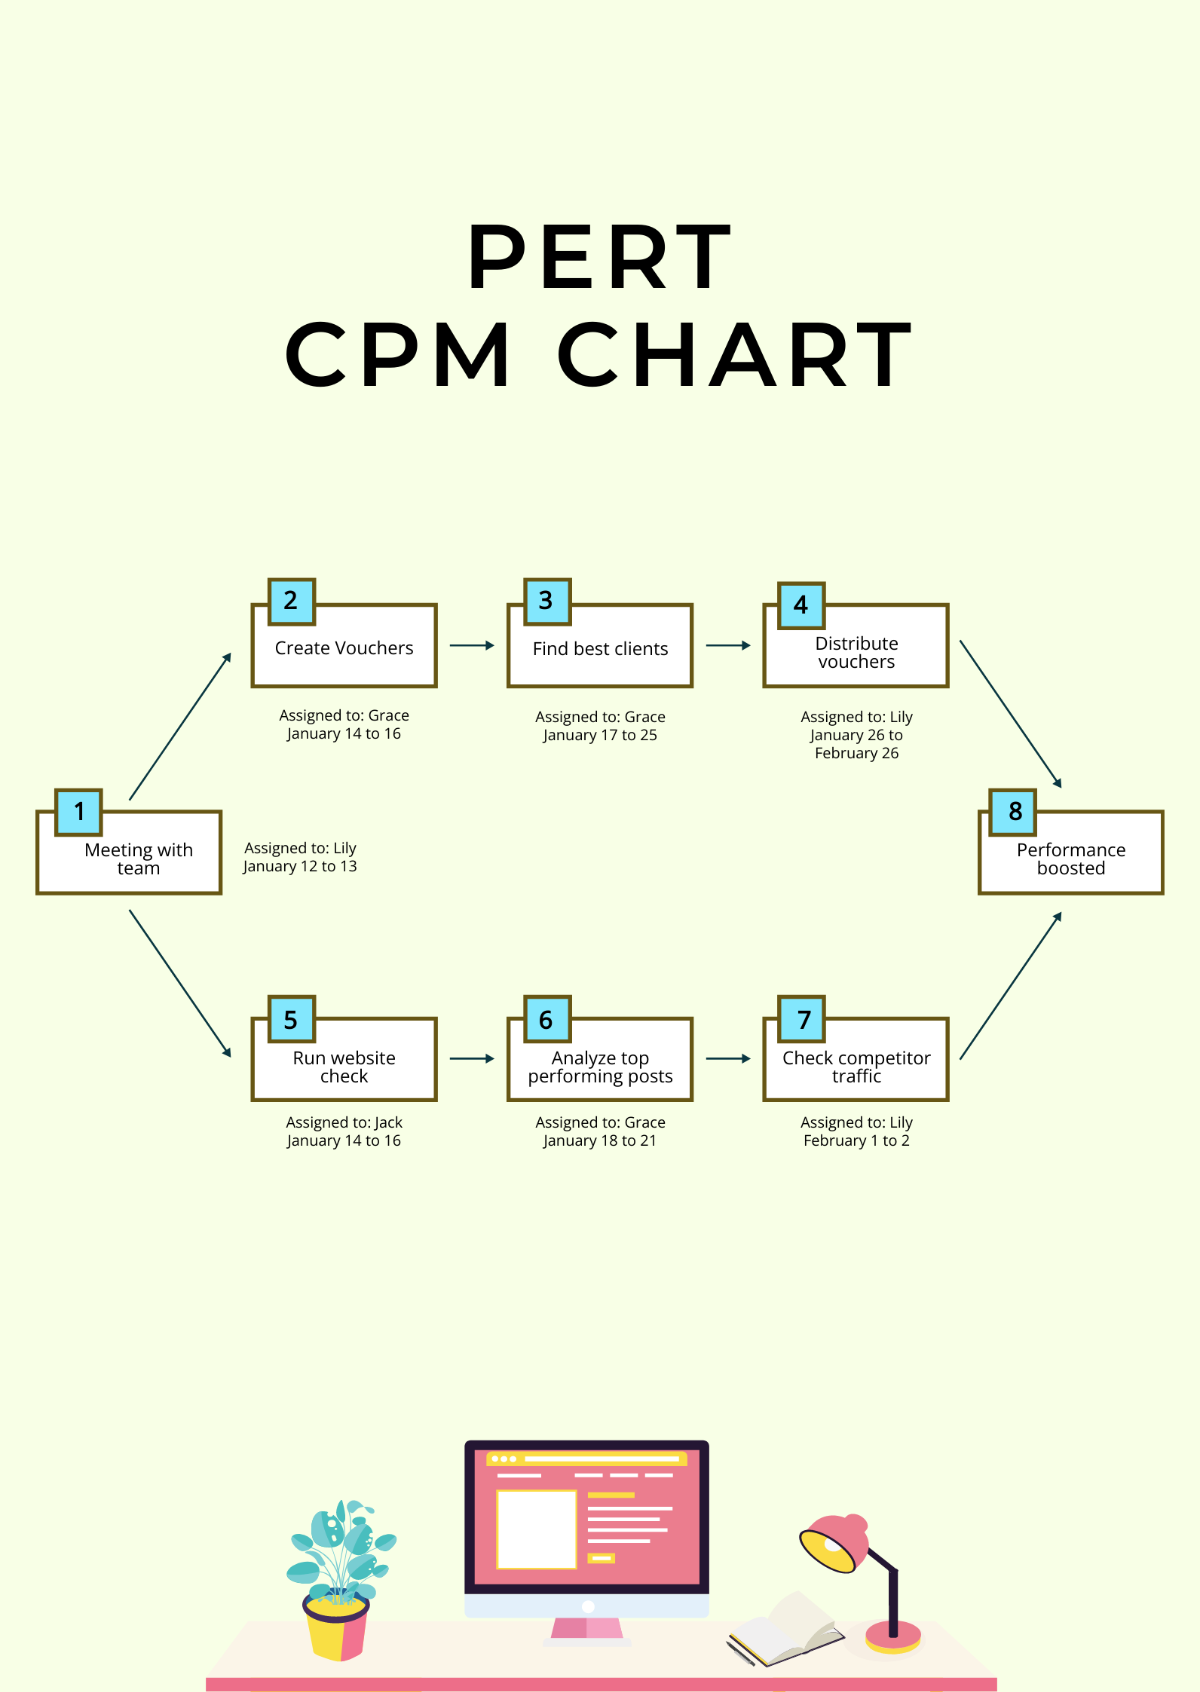 PERT CPM Chart Template